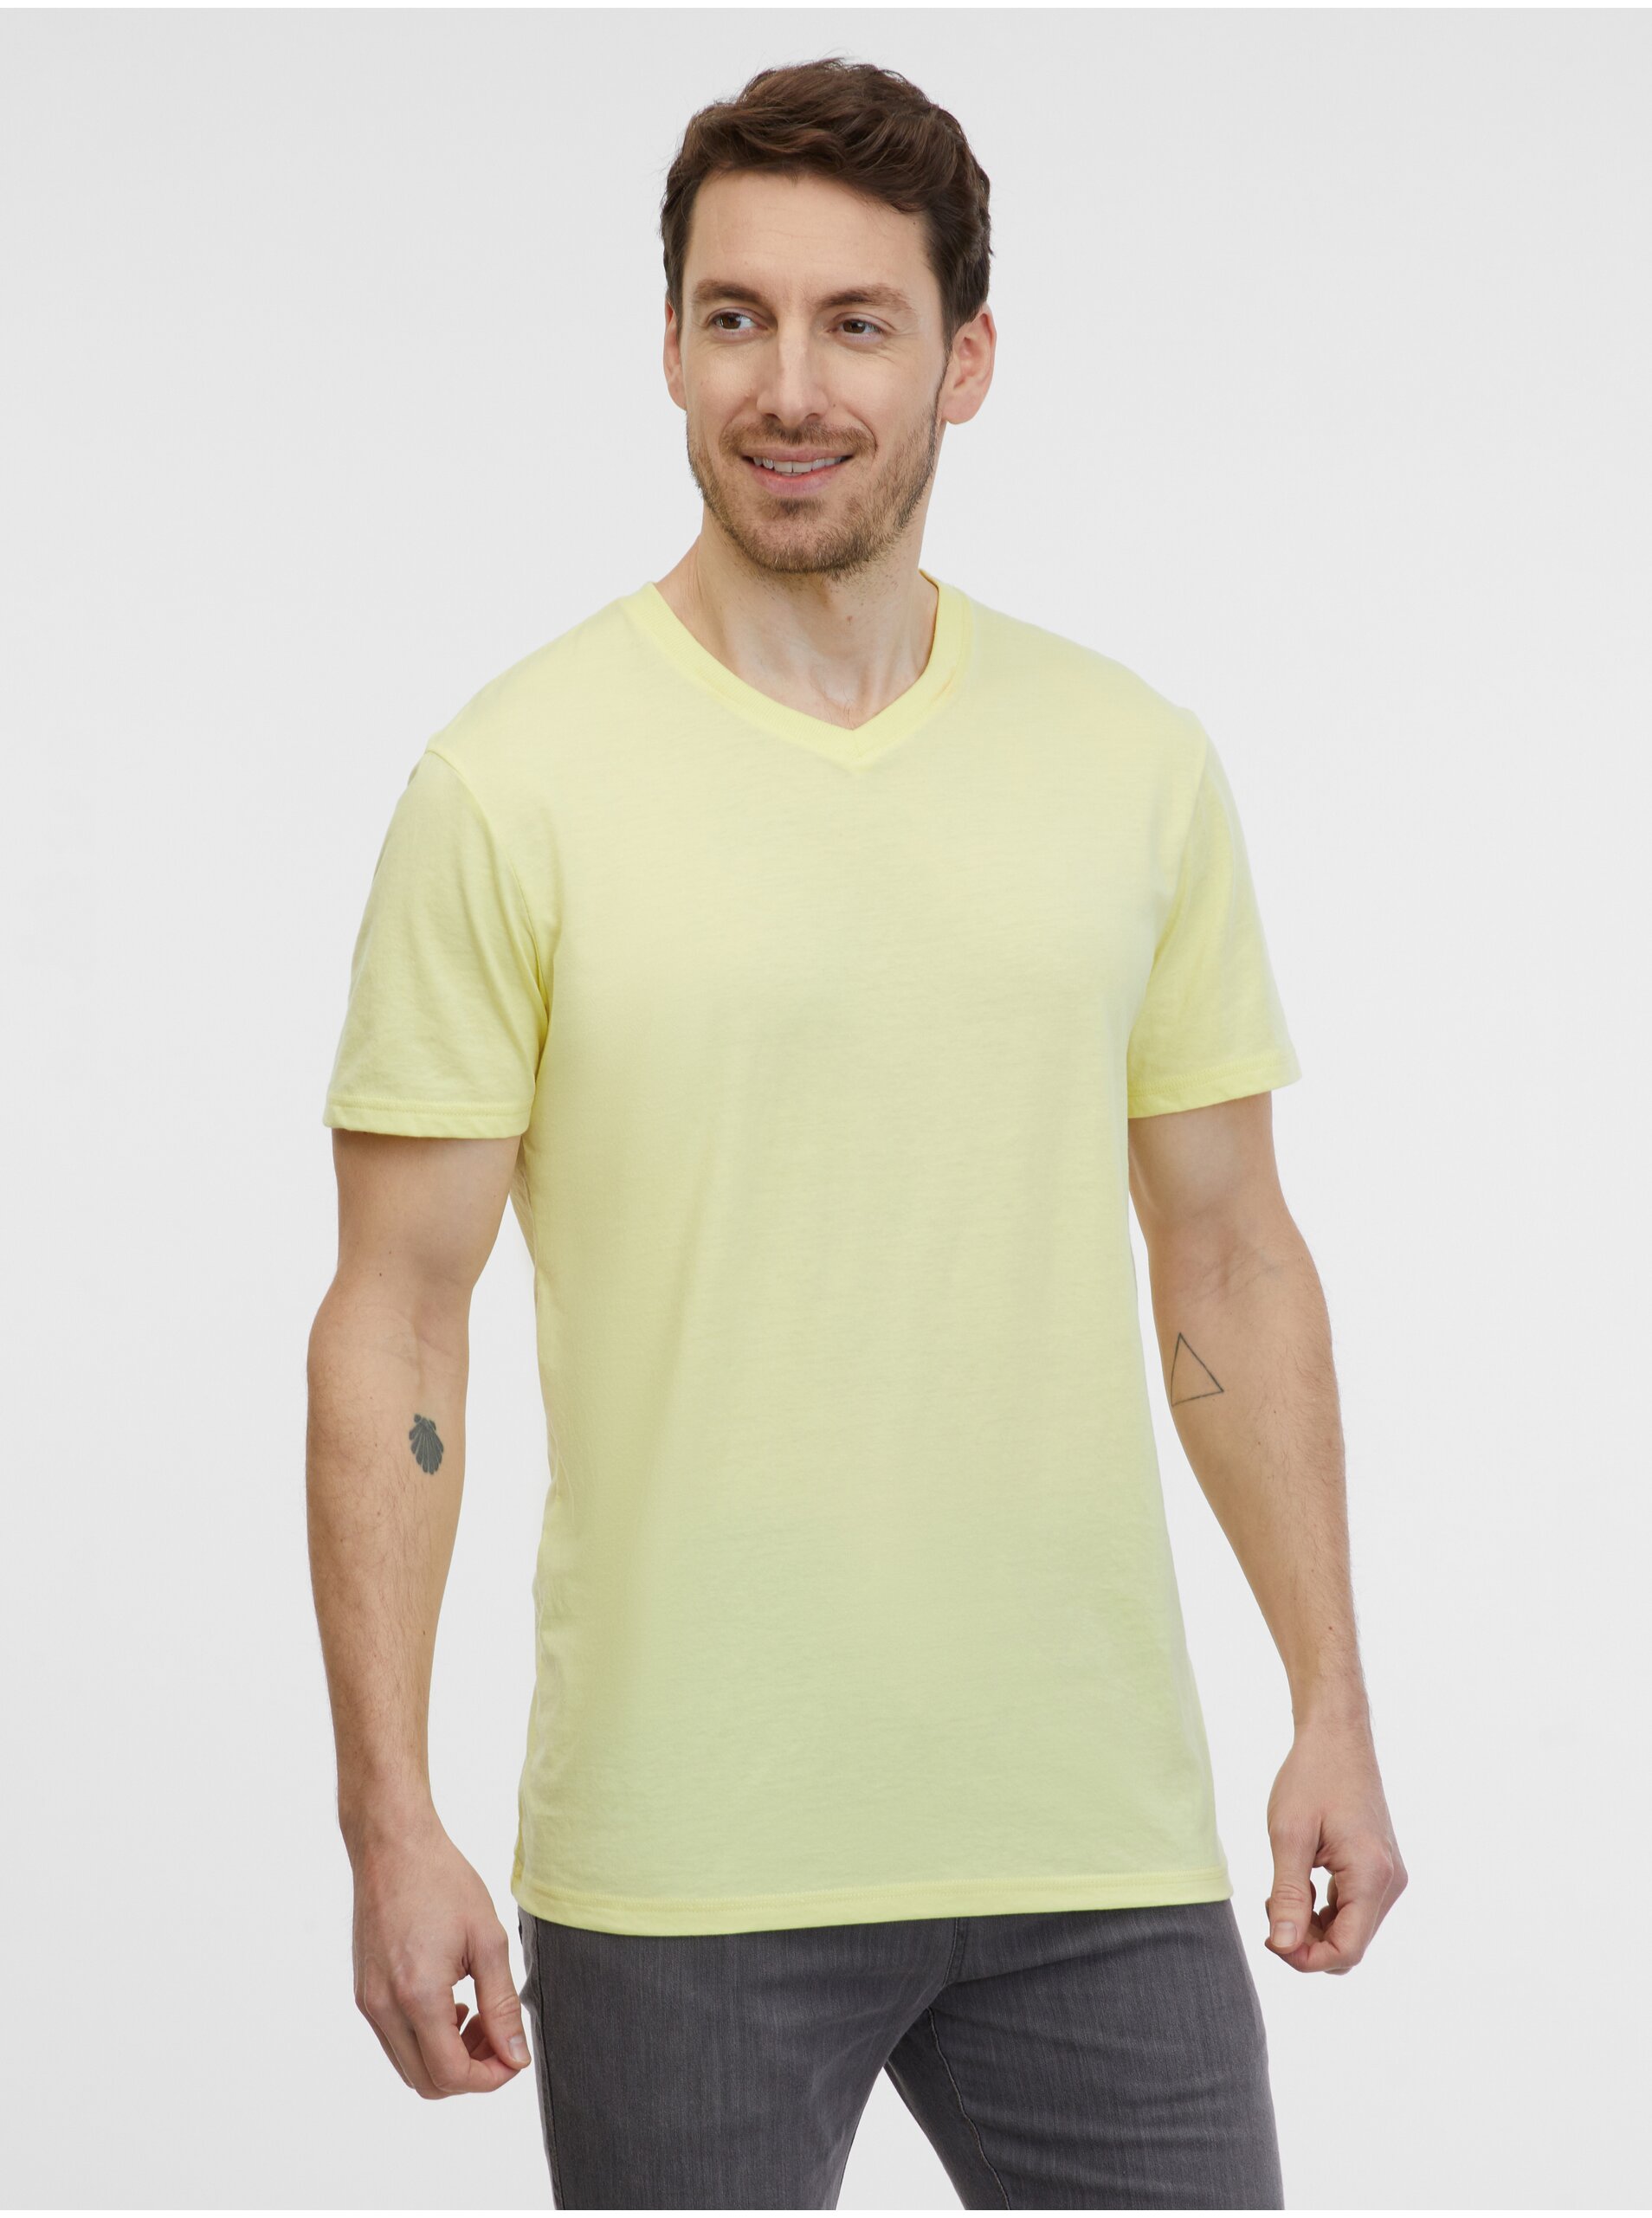 Lacno Svetlo žlté pánske tričko SAM 73 Fidel